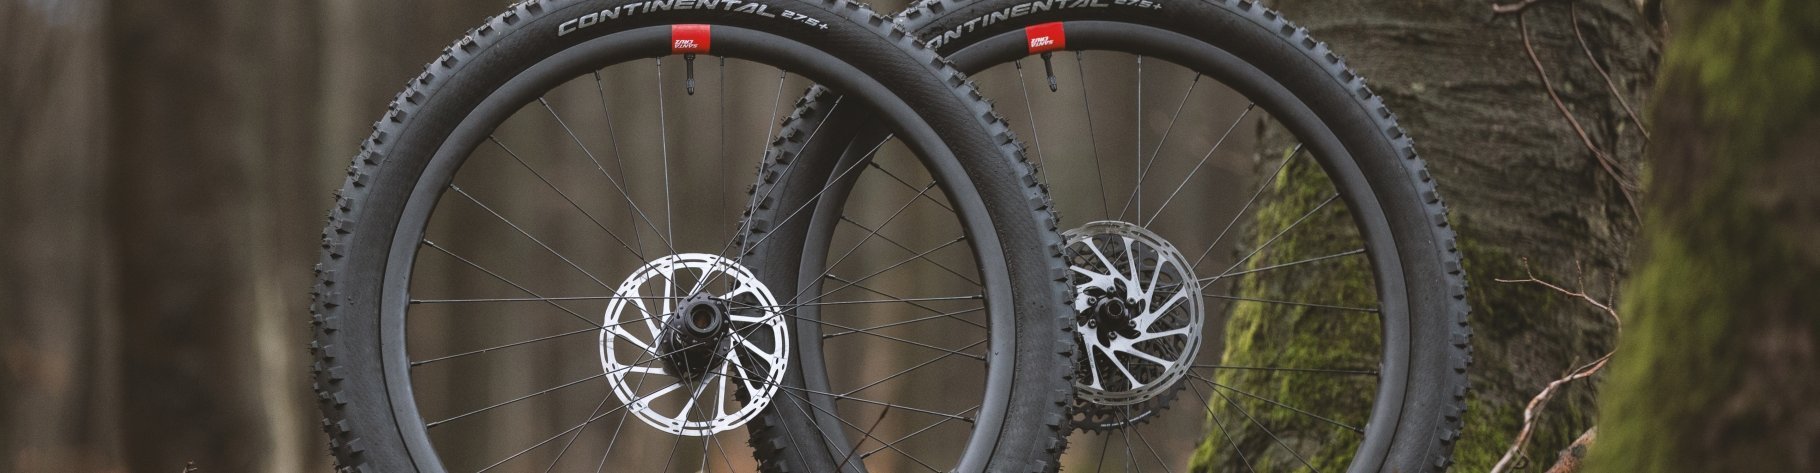 The Santa Cruz Reserve 30 wheelset for Enduro mountain biking.